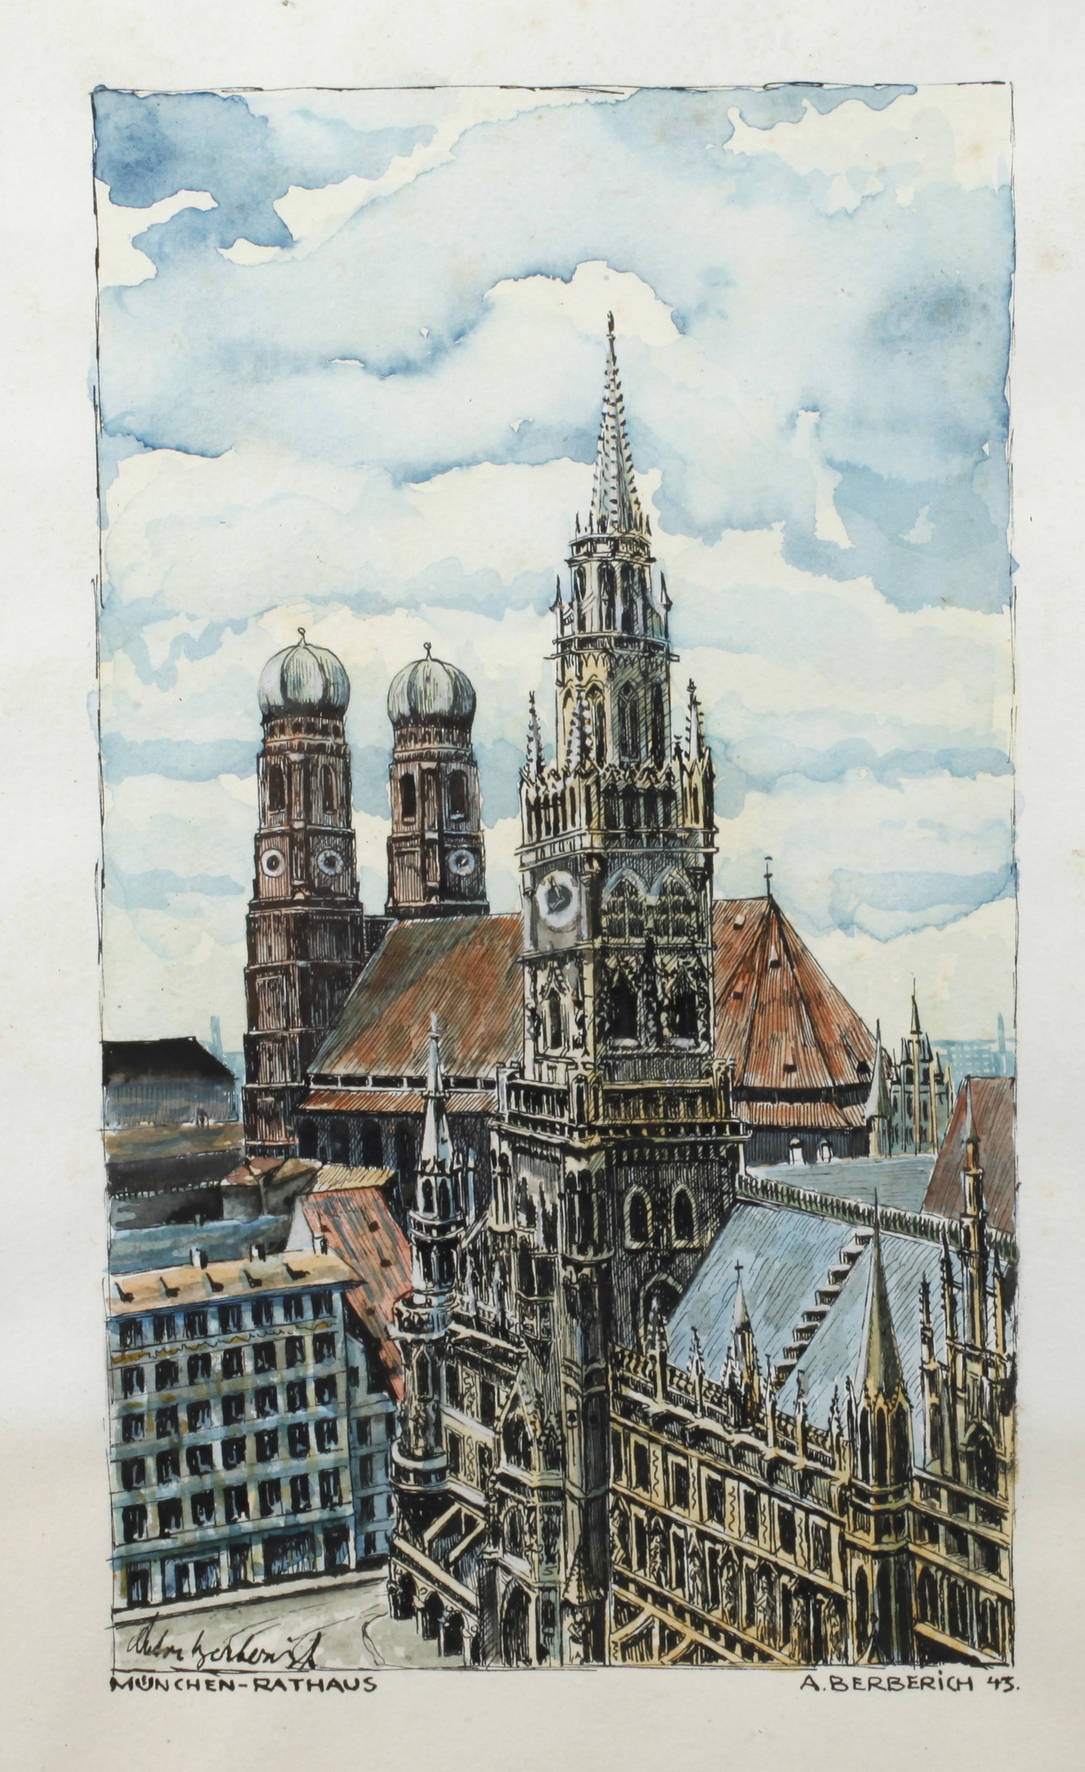 Anton Karl Berberich, ”München – Rathaus”